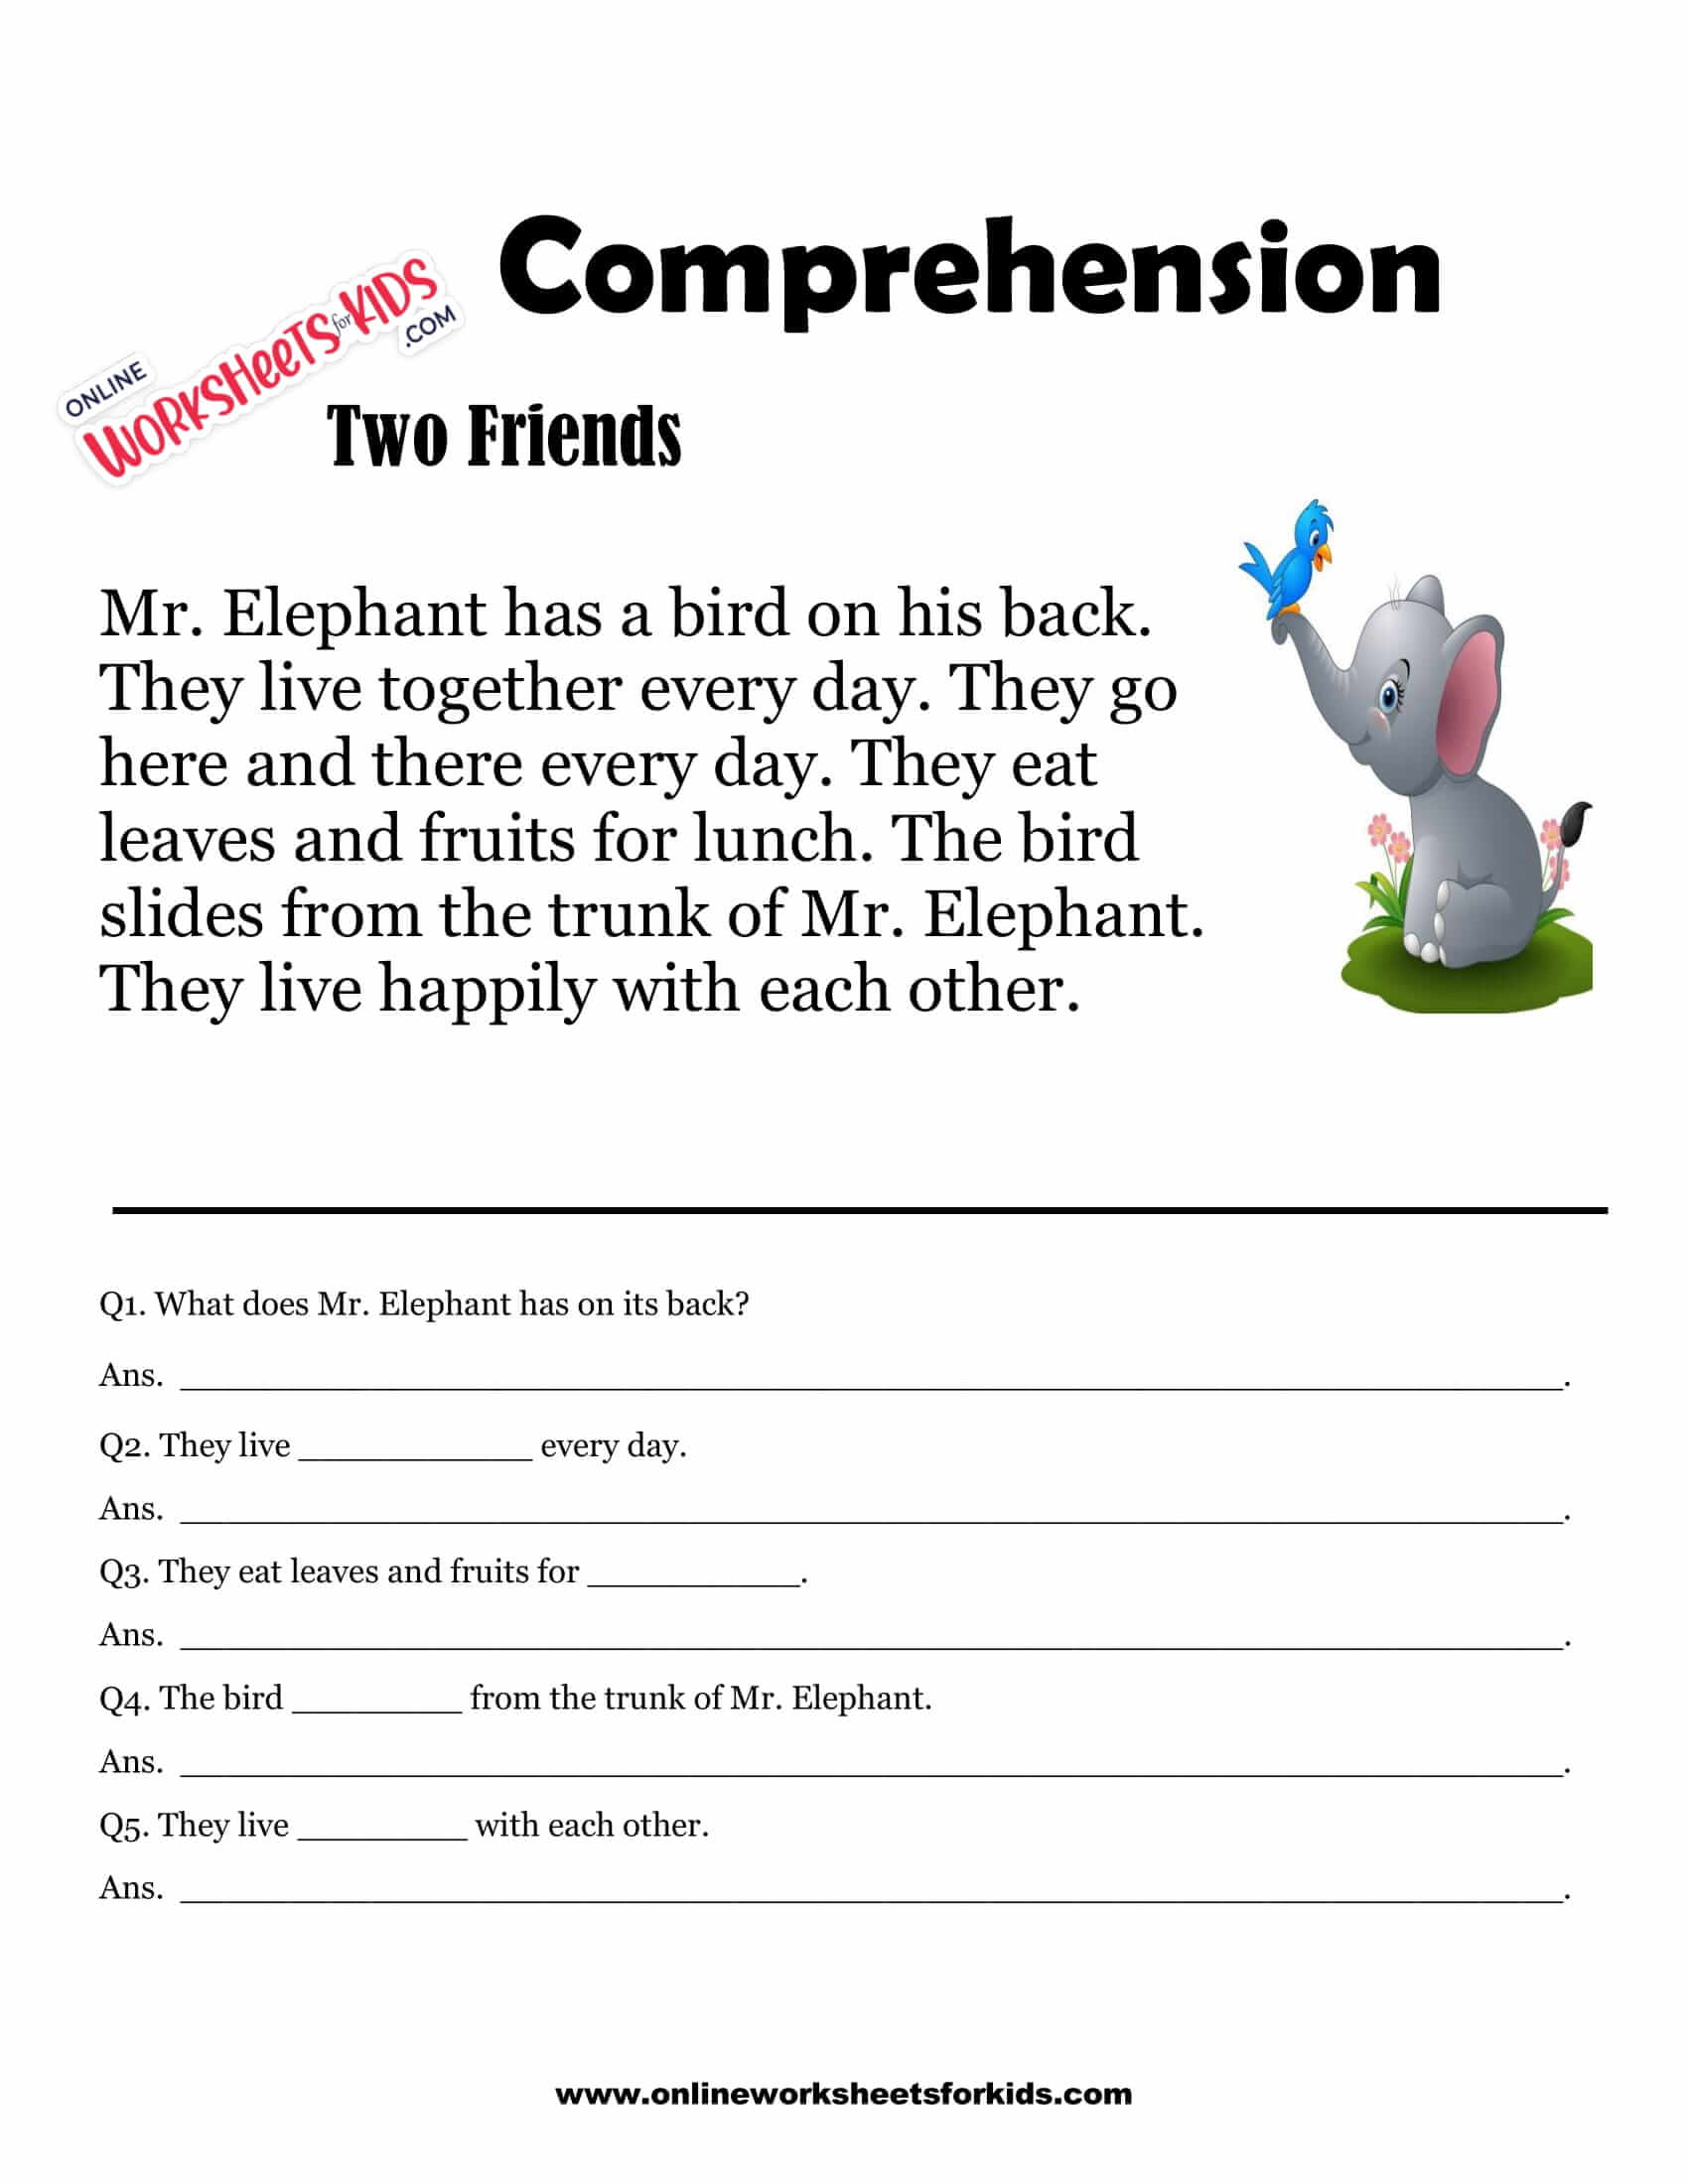 comprehension-worksheets-for-grade-1-42